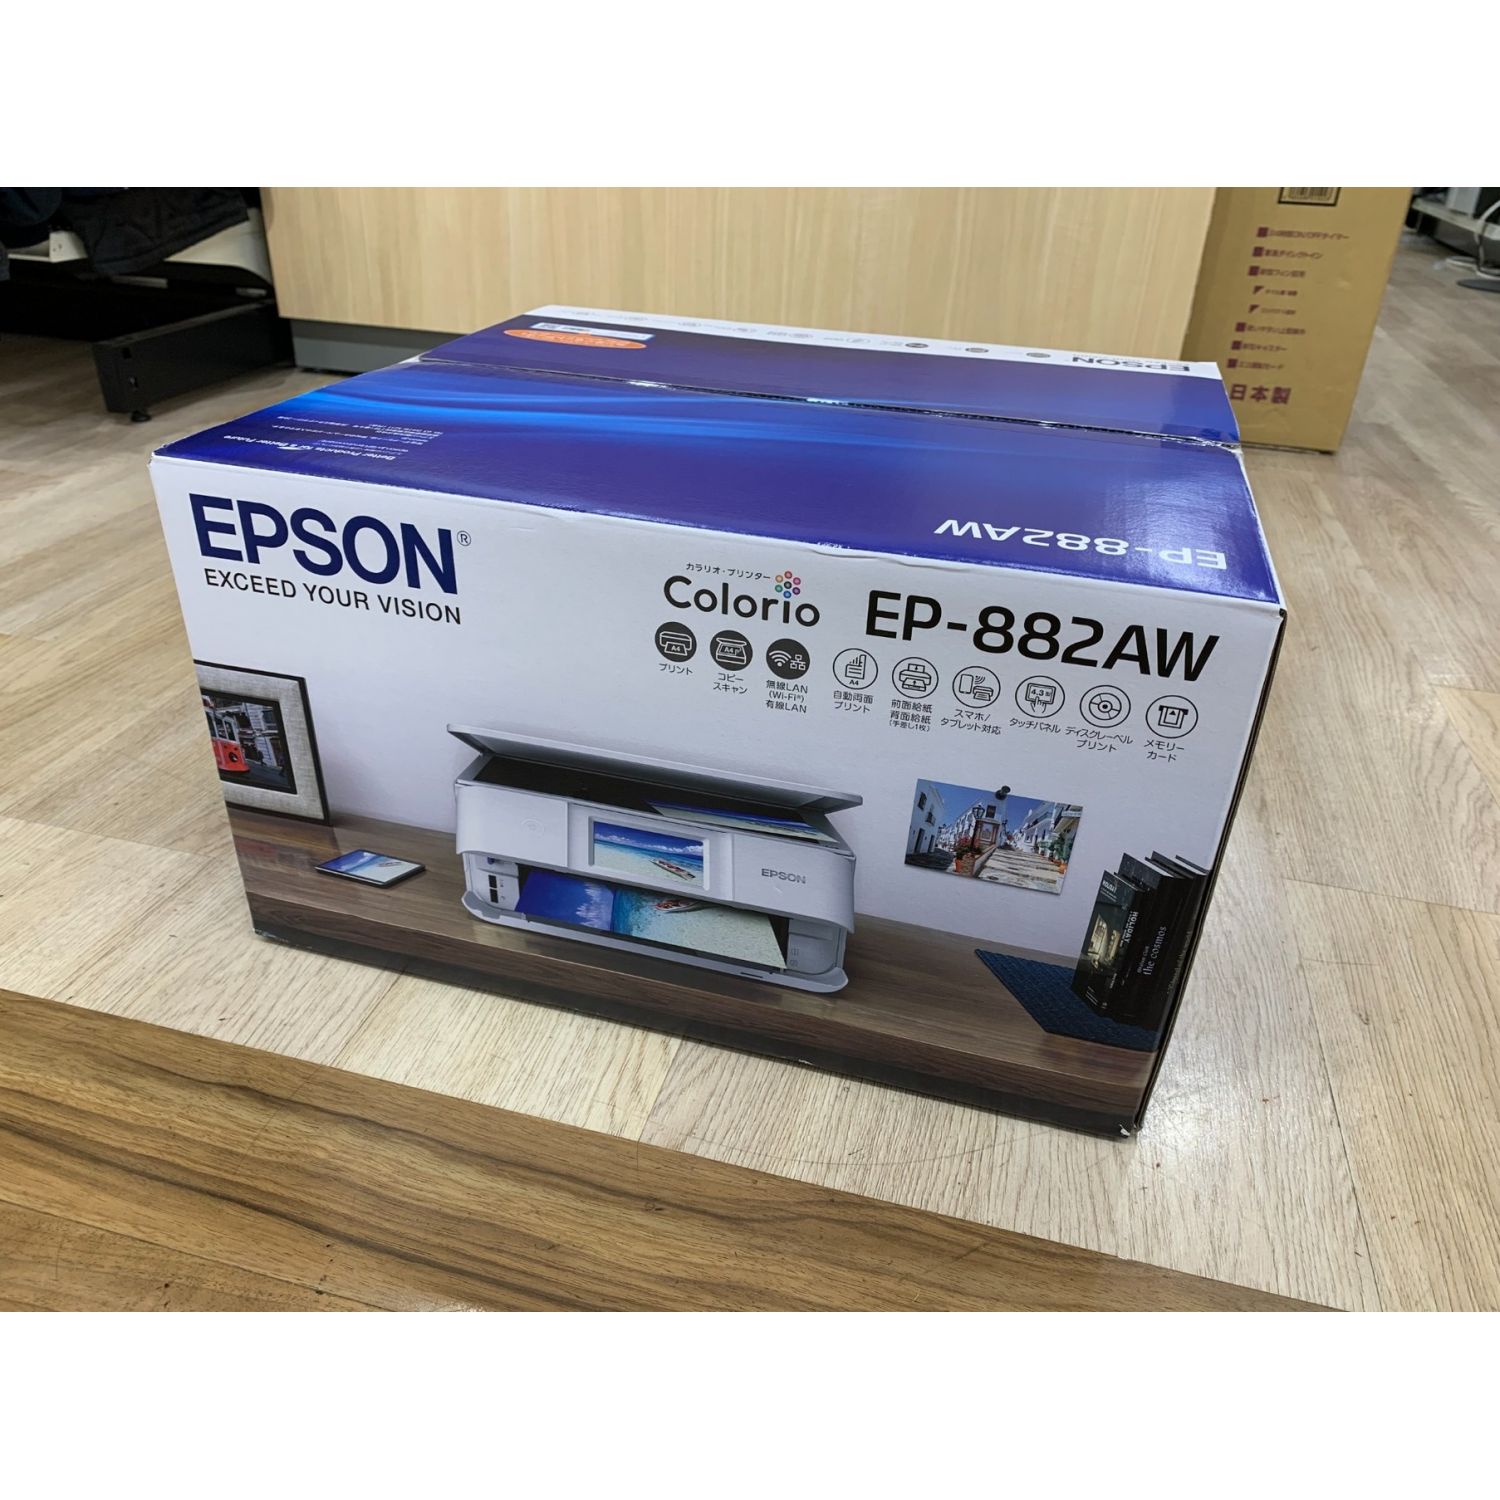 PC/タブレット【新品 未使用品】EPSON インクジェット プリンタ EP-882AW